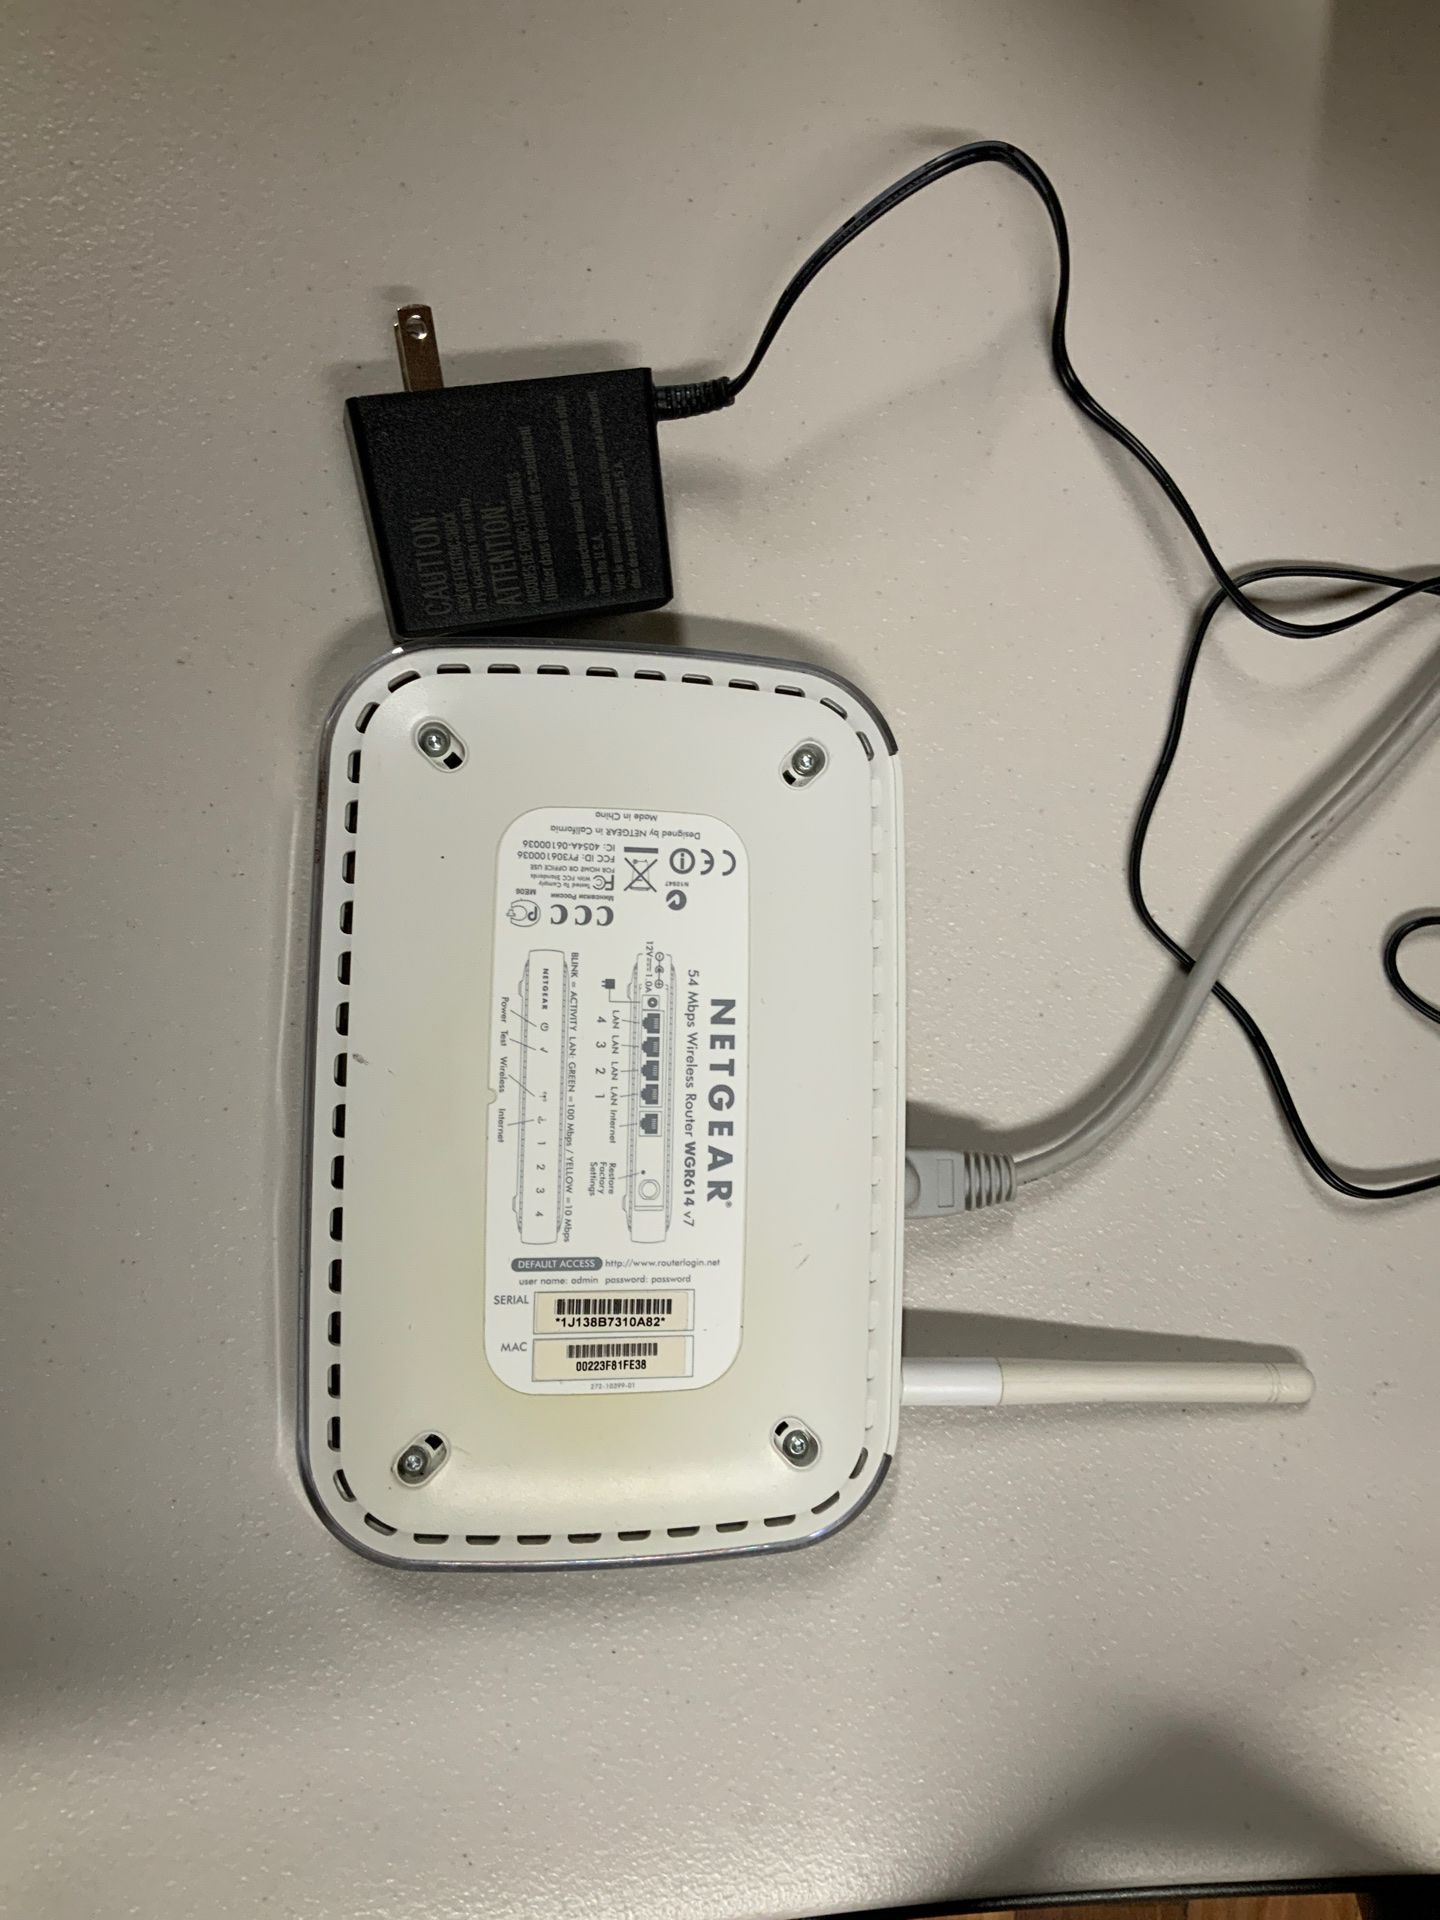 Netgear 54 Mpbs wireless router